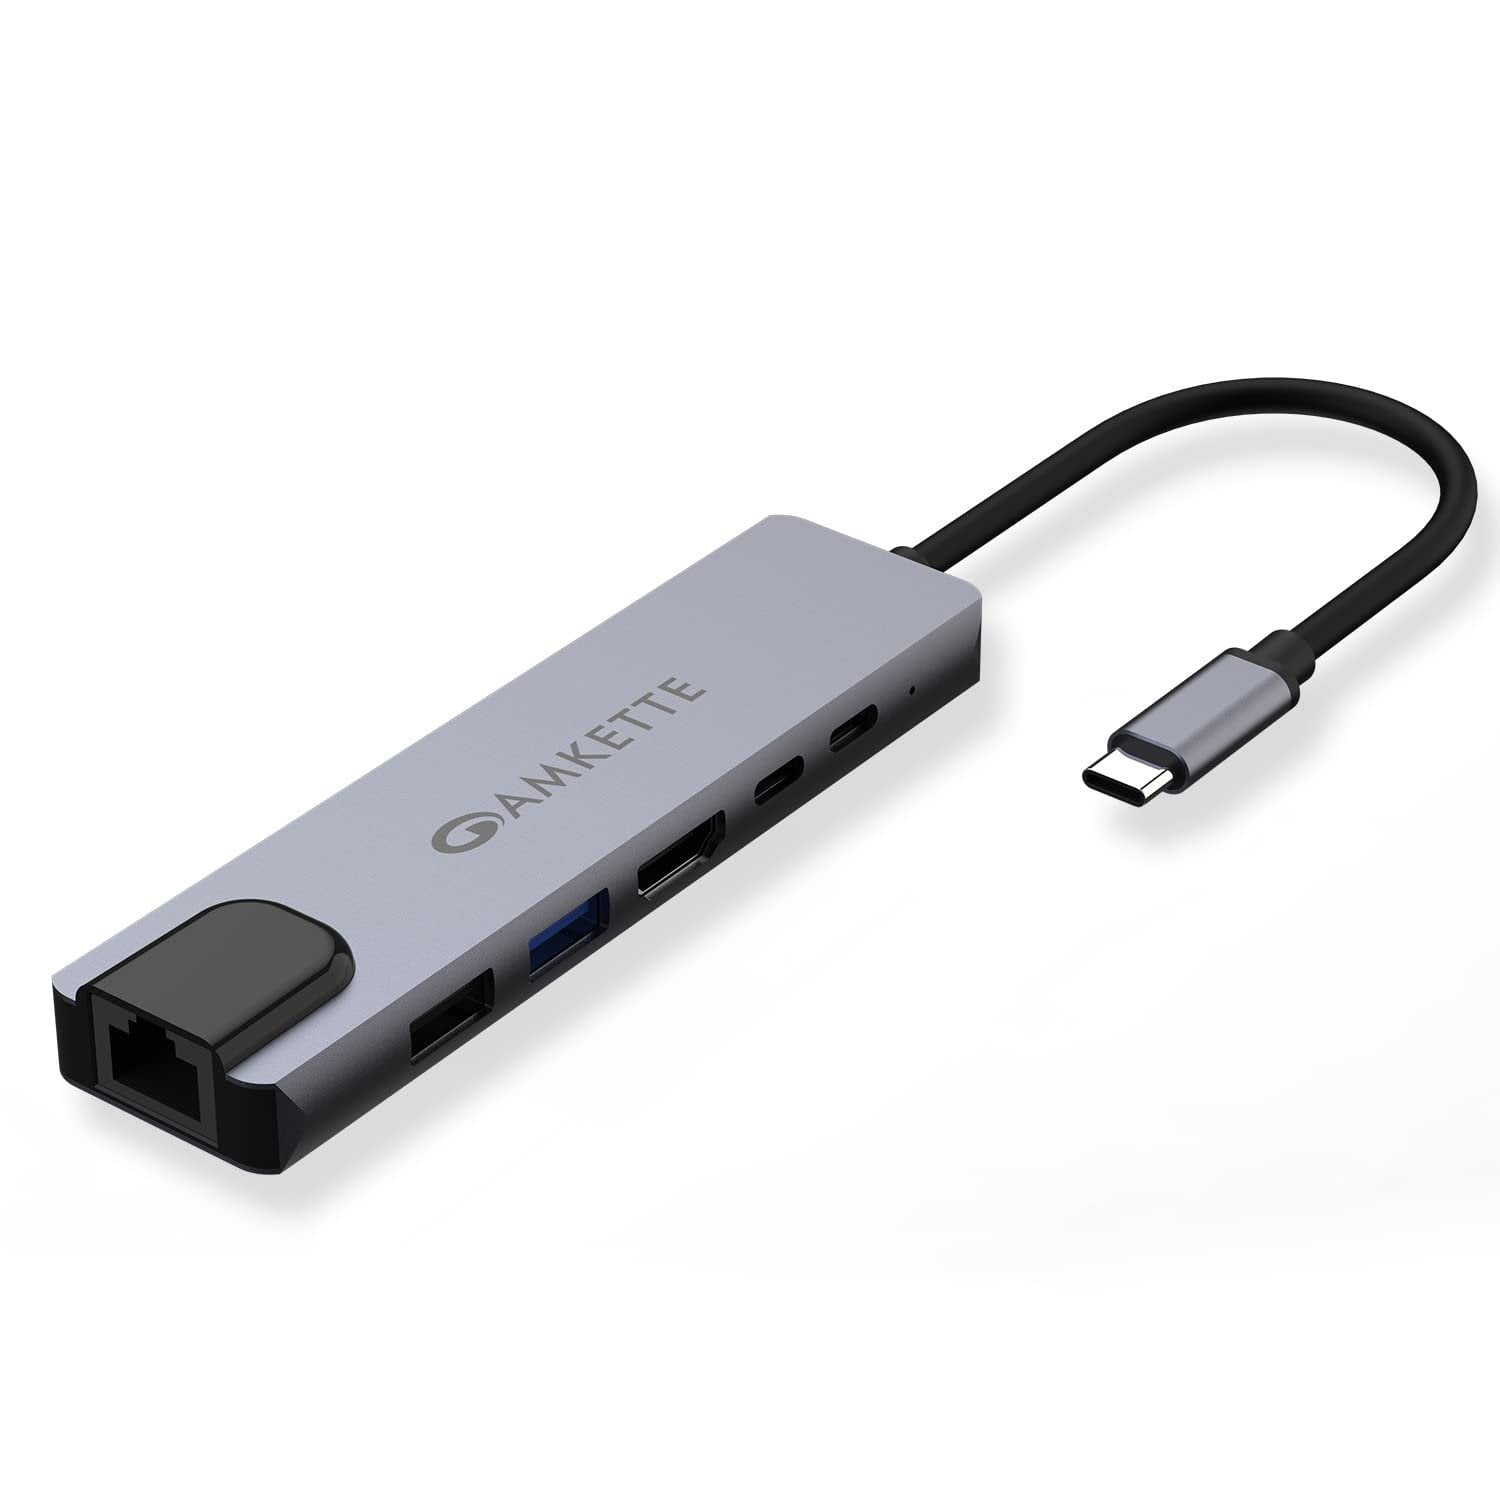 Superspeed USB 3.0 4 Port USB Hub – Amkette